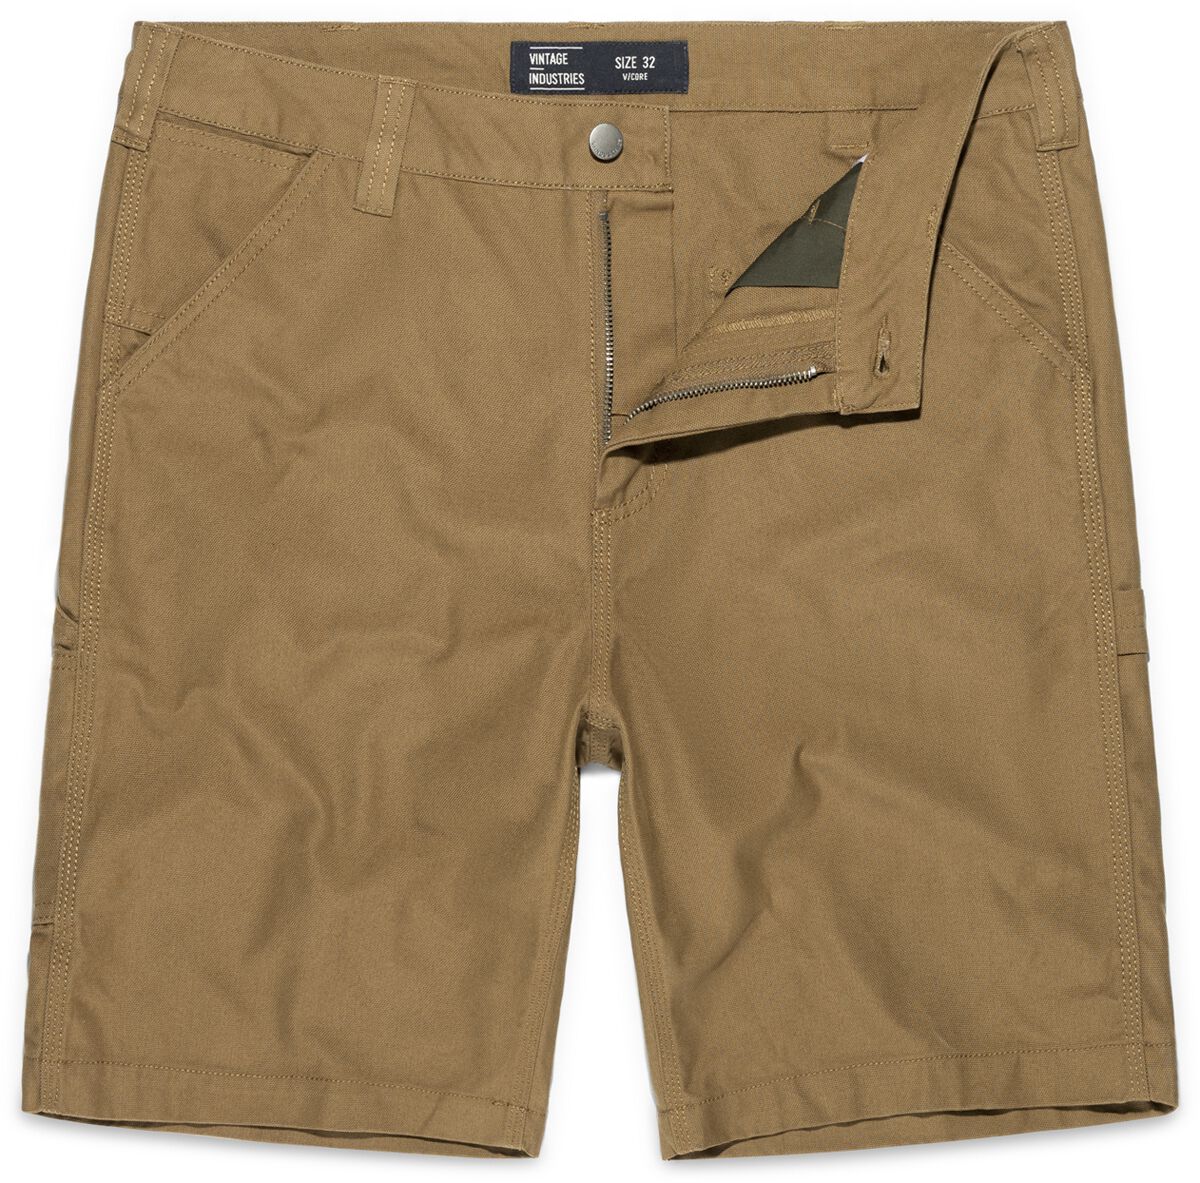 Vintage Industries Short - Dayton Shorts - 32 bis 38 - für Männer - Größe 32 - beige